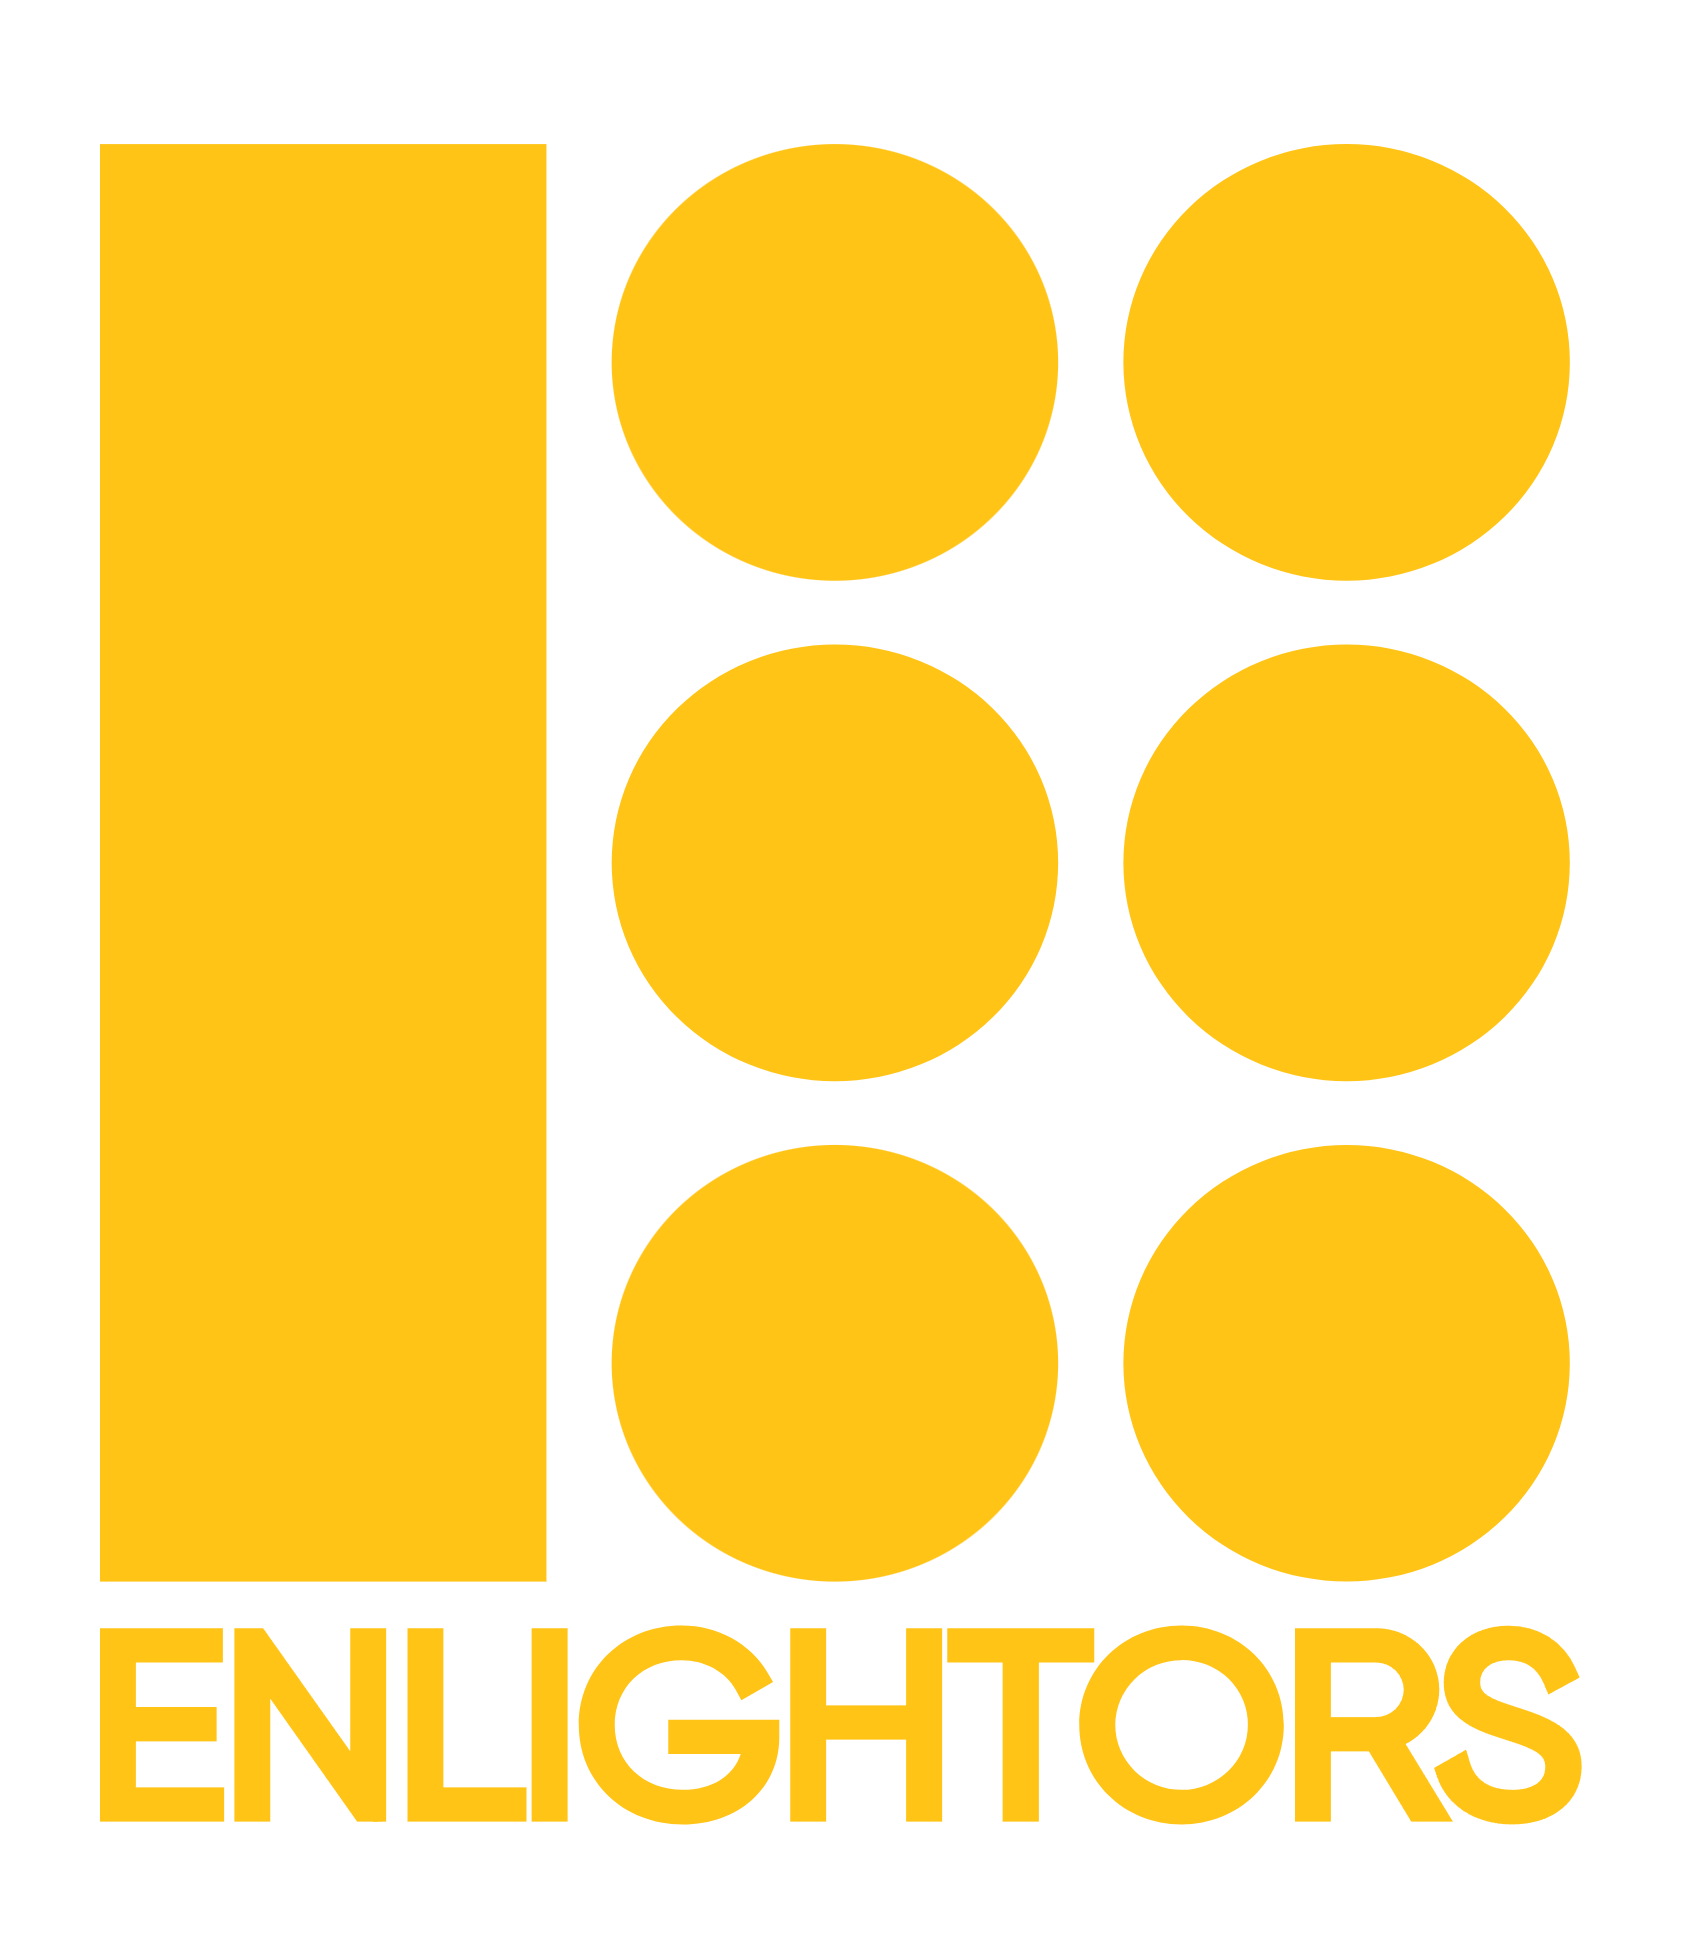 Enlightors